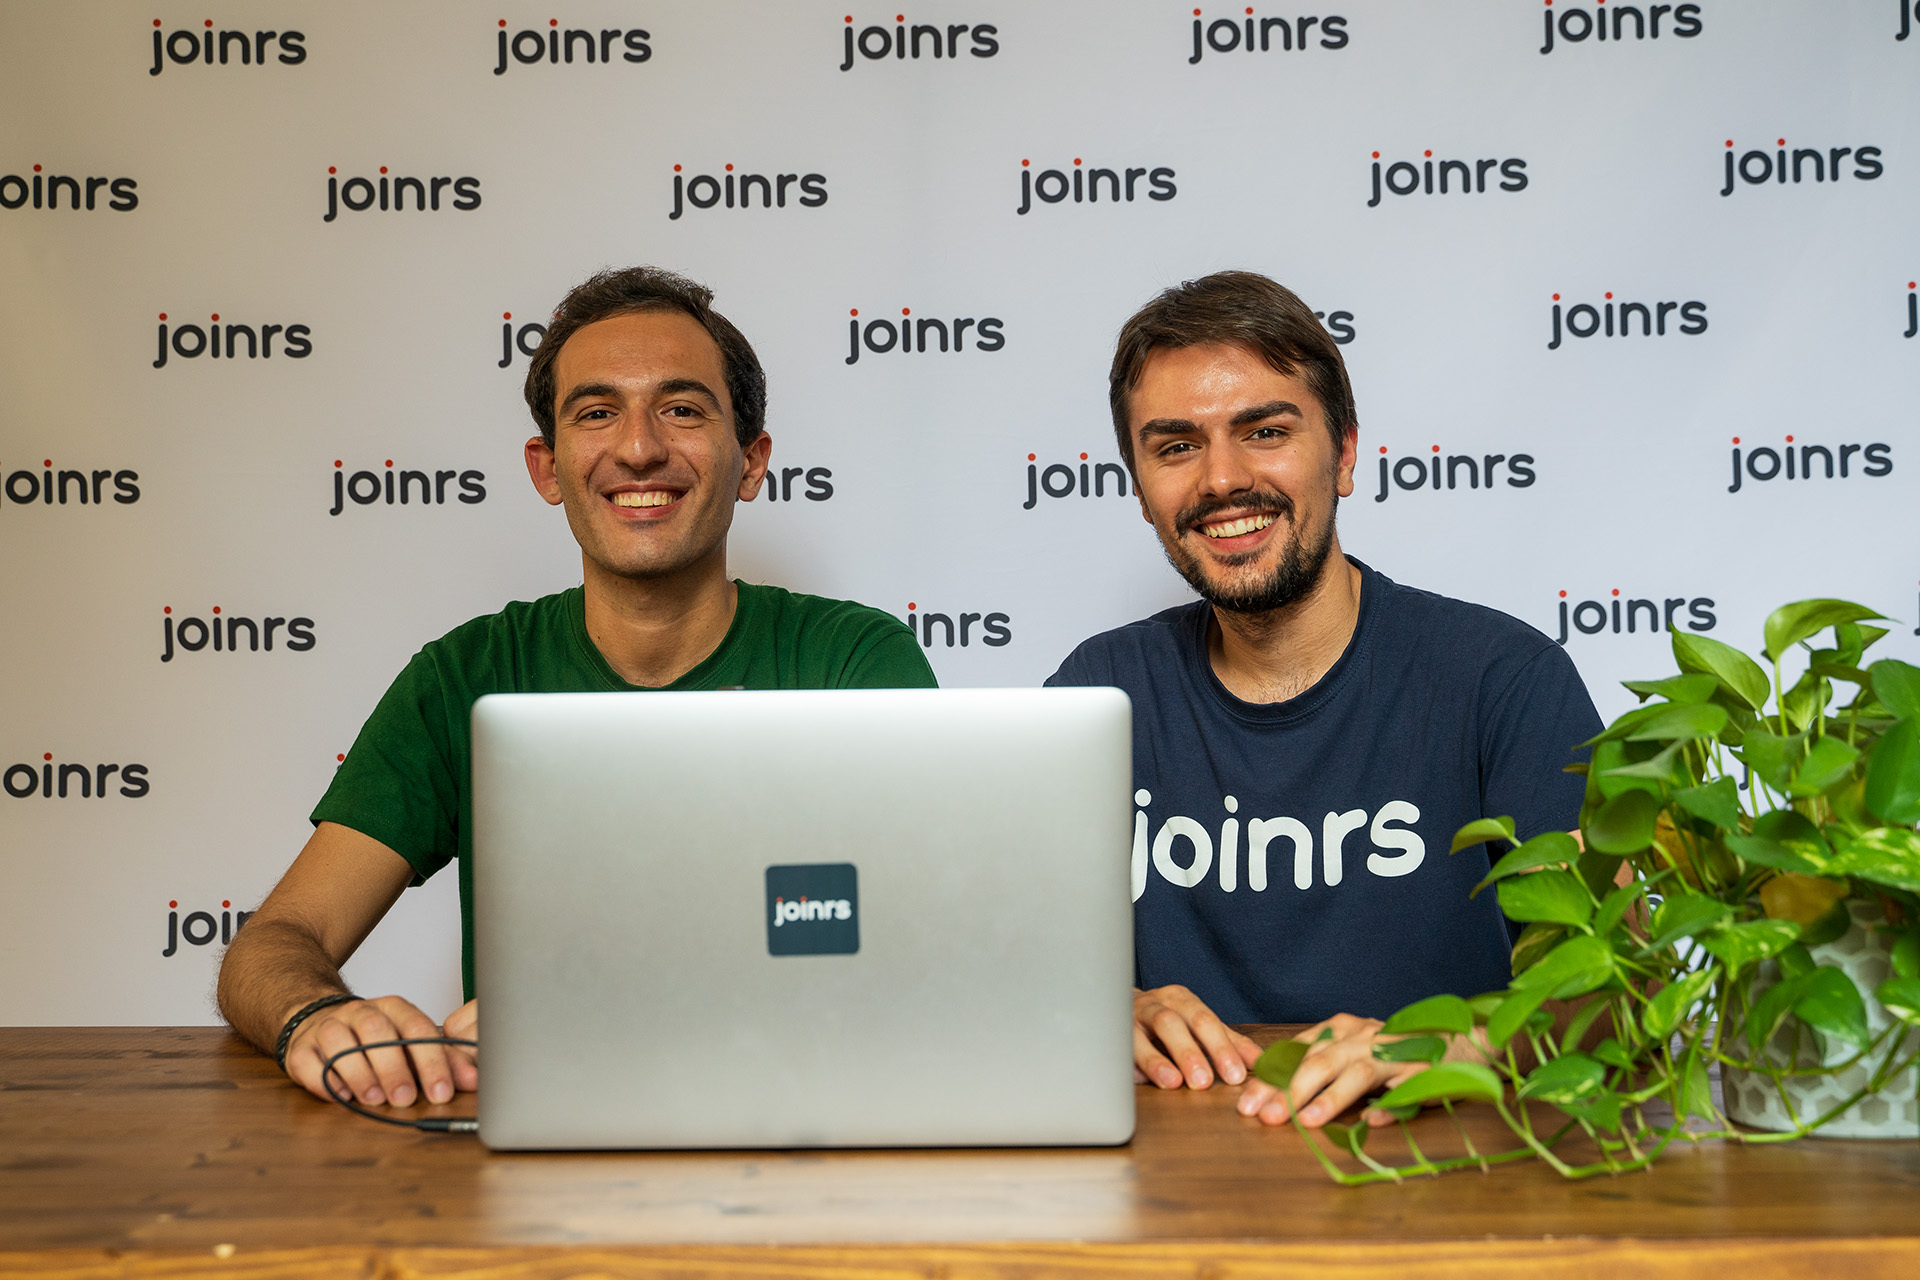 L’intelligenza artificiale per cercare lavoro, ci pensa la startup italiana Joinrs